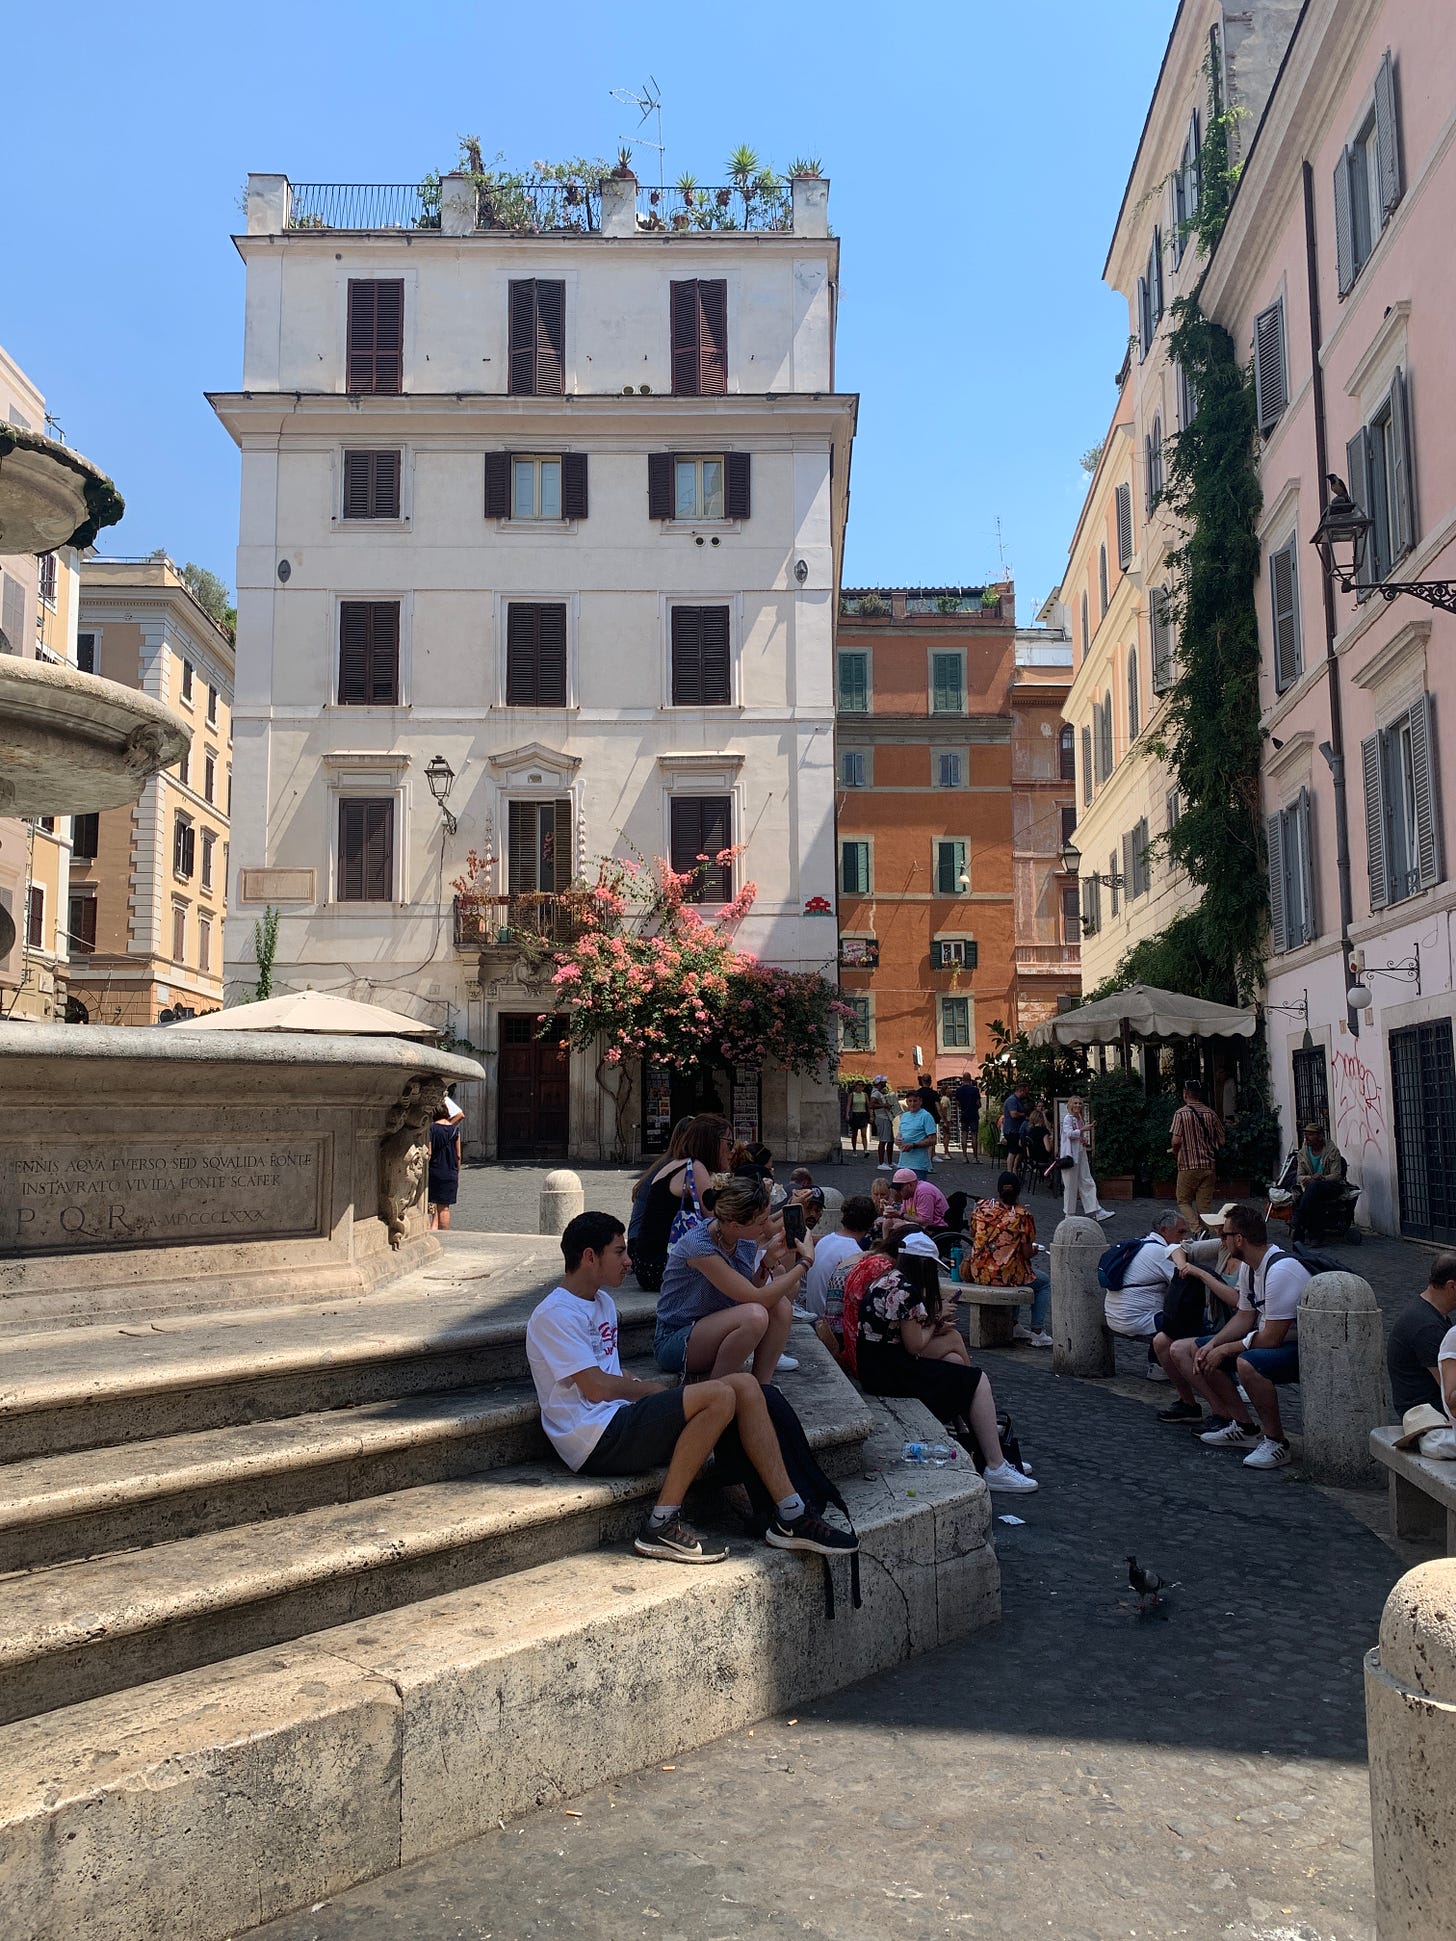 Summer in the Piazza Madonna dei Monti, Rome